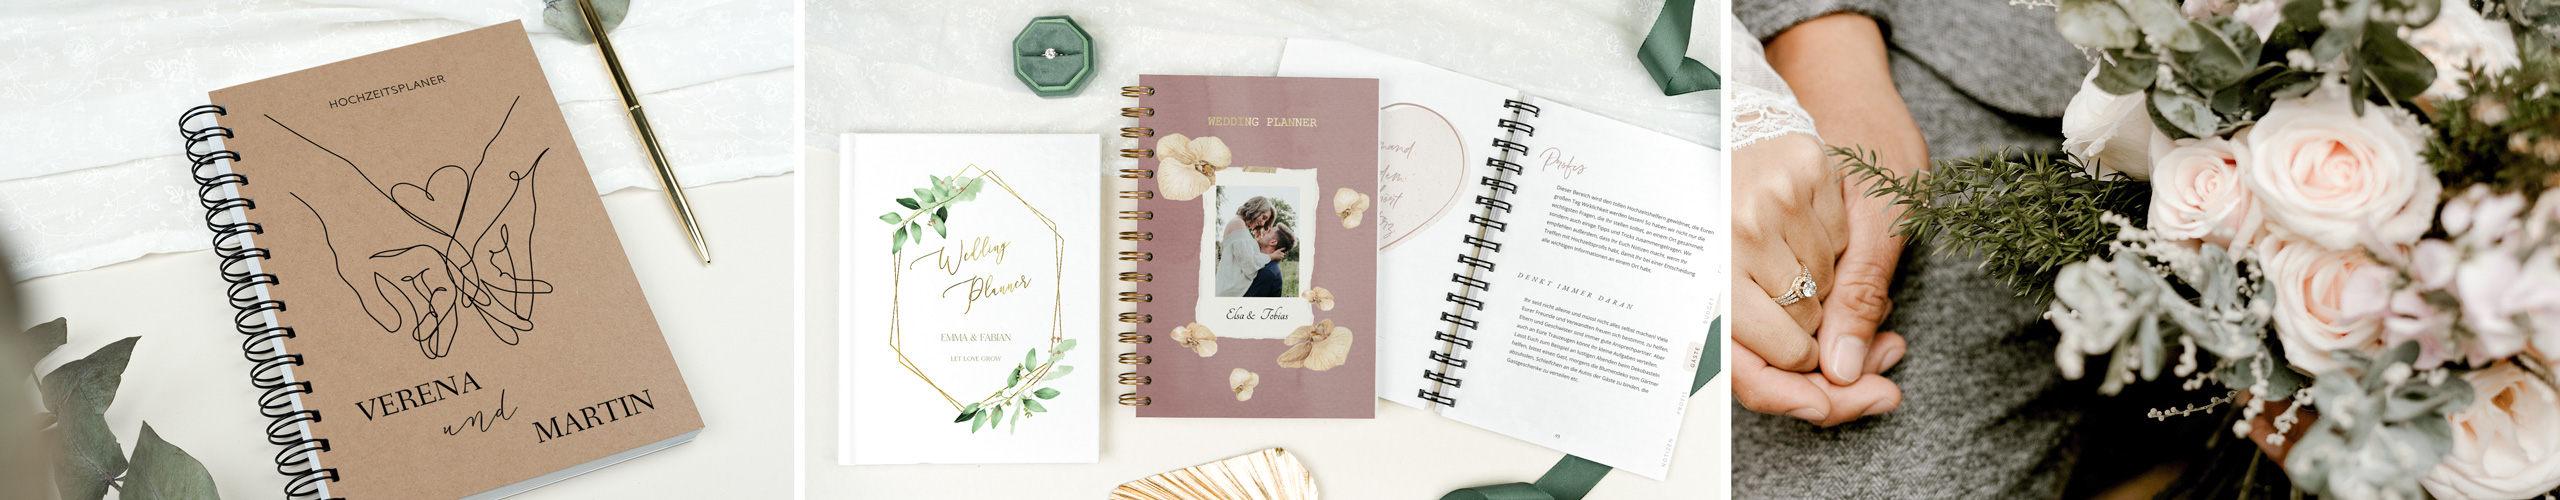 Personalisierte Hochzeitsplaner-Bücher in verschiedenen Designs